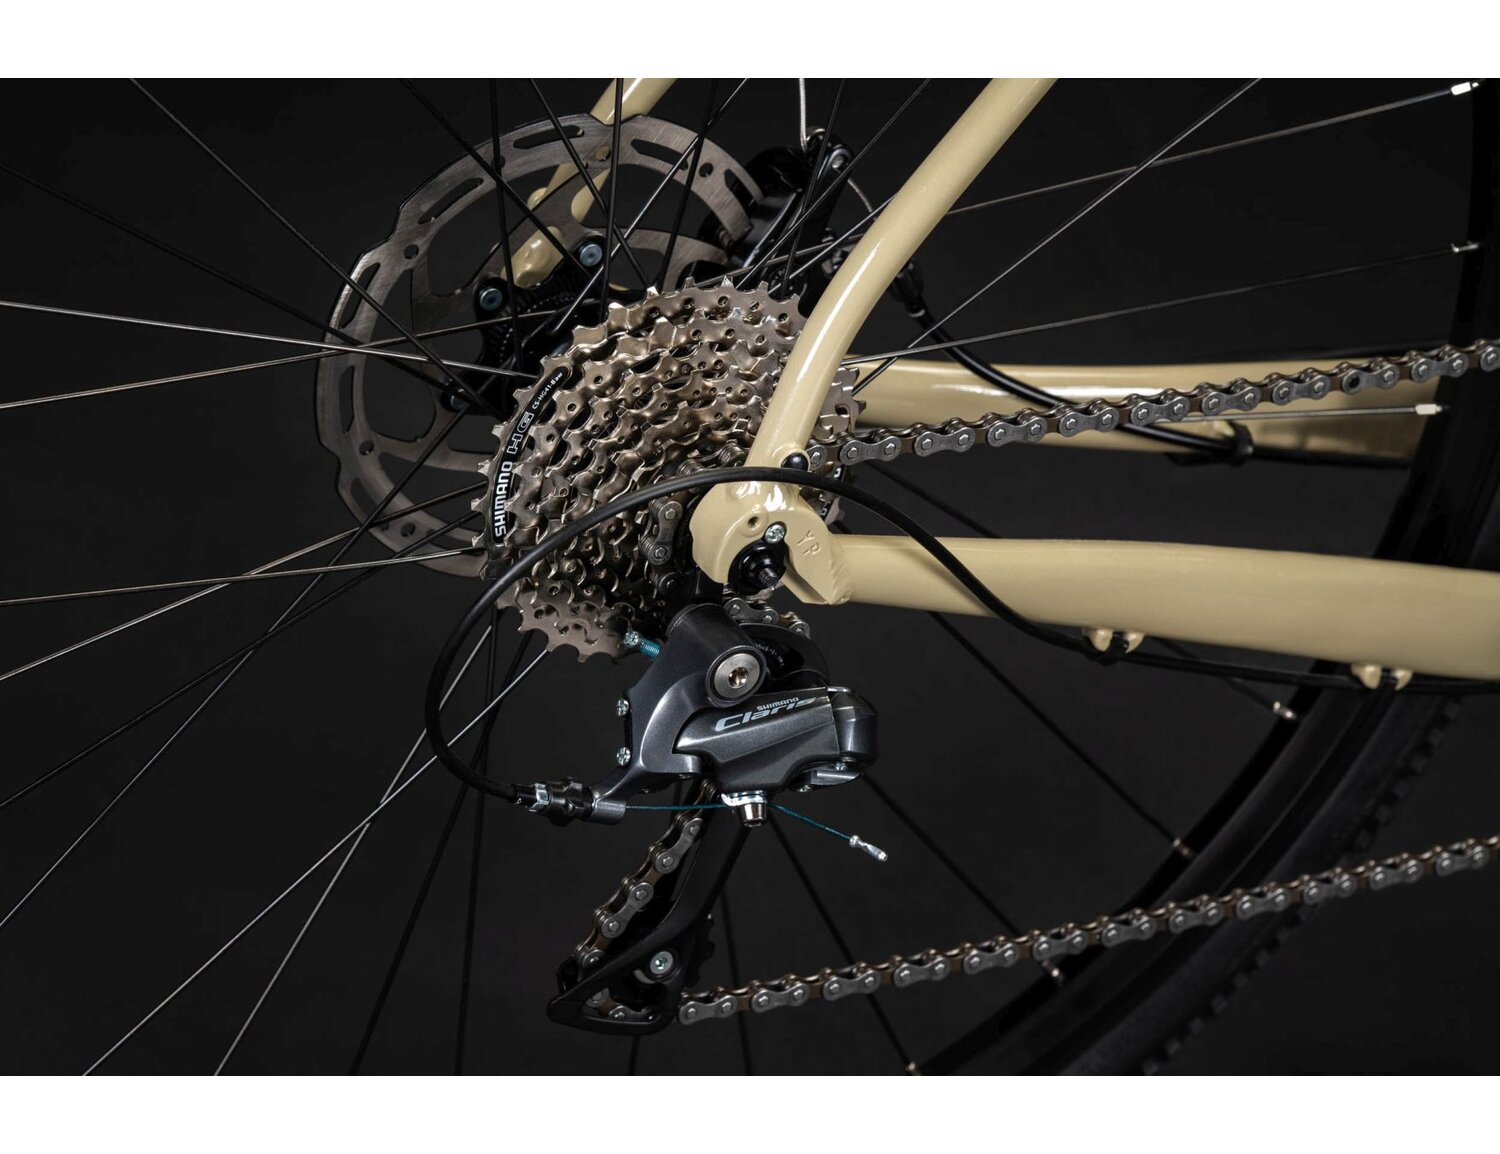  Ośmiorzędowa tylna przerzutka Shimano claris R2000 w rowerze gravelowym Kross Esker 1.0 